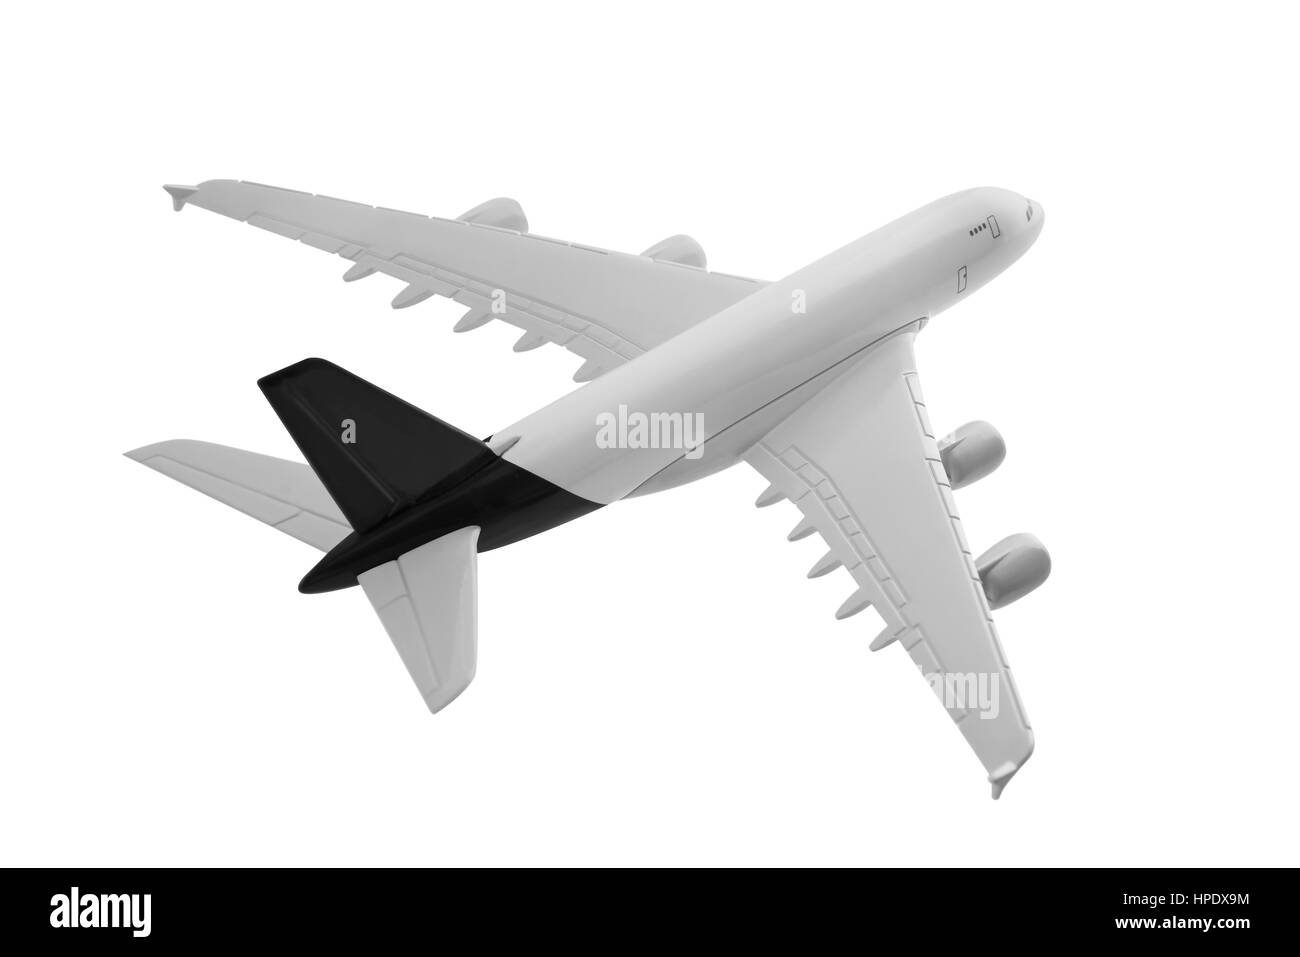 Flugzeug mit schwarzer Farbe, isoliert auf weißem Hintergrund. Stockfoto